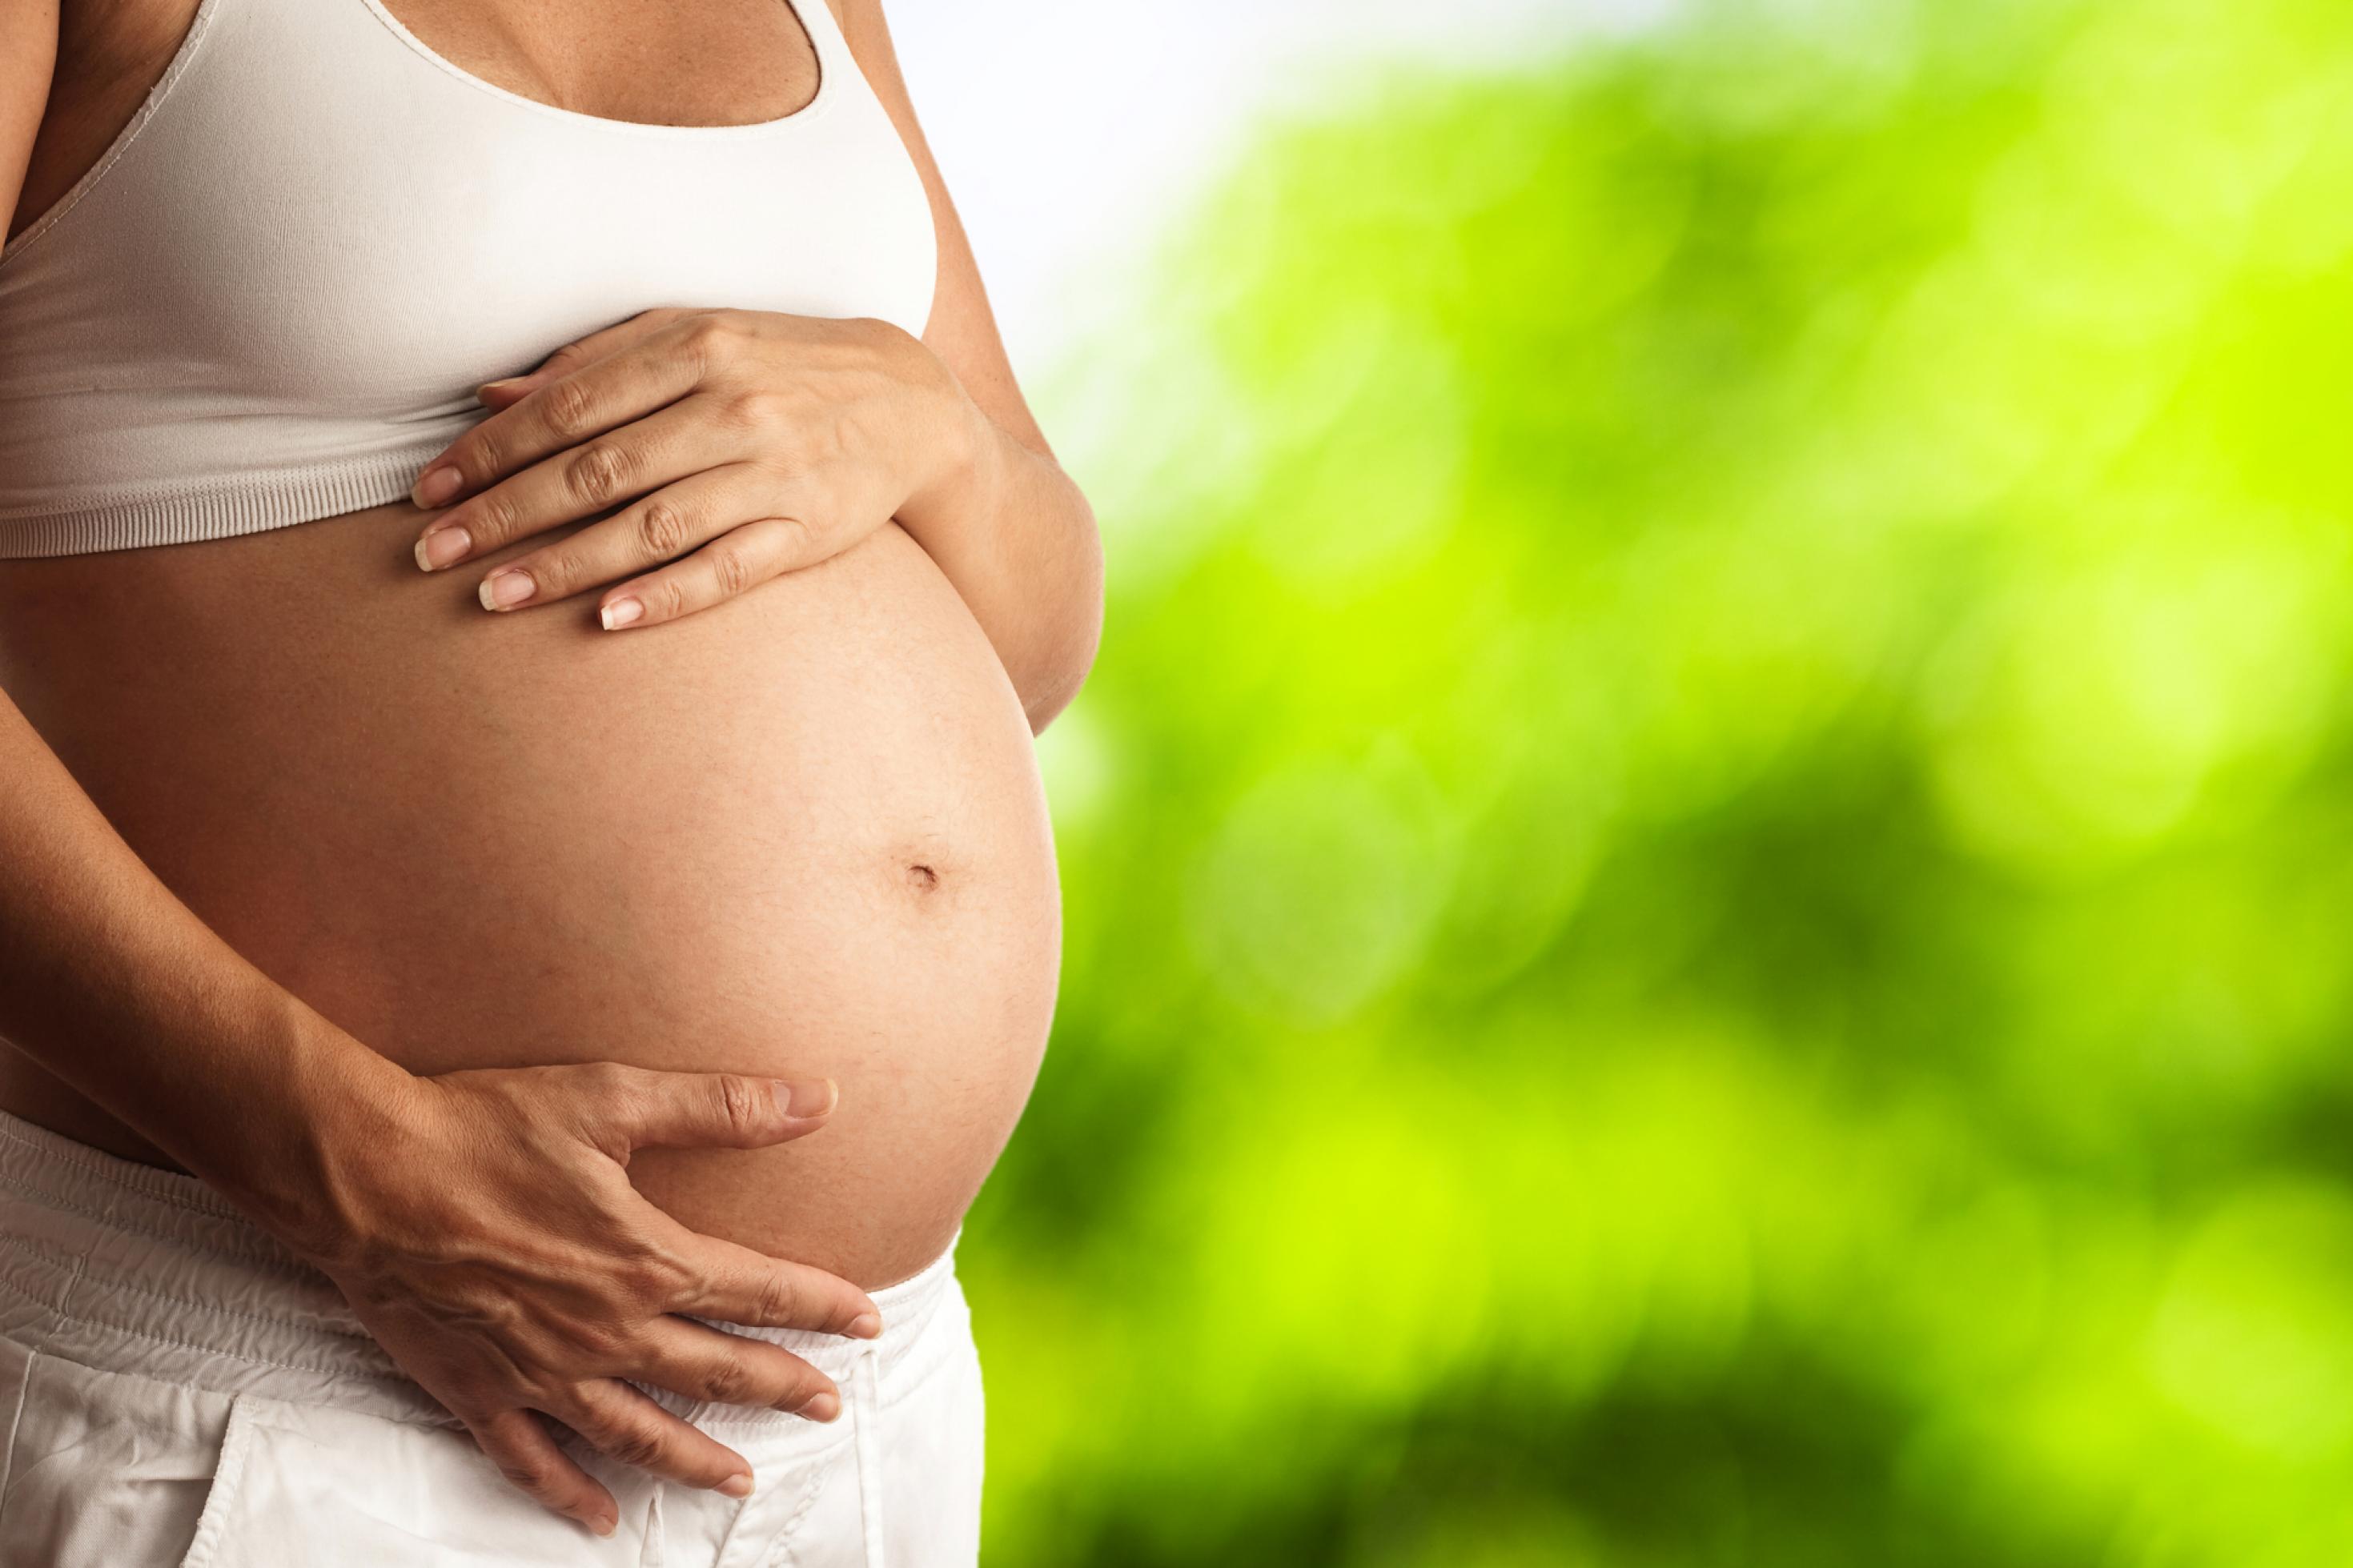 Schwangere hält ihre Hände an ihren Babybauch. Hitzewarnungen und Handlungsempfehlungen werden noch zu selten an Schwangere kommuniziert.